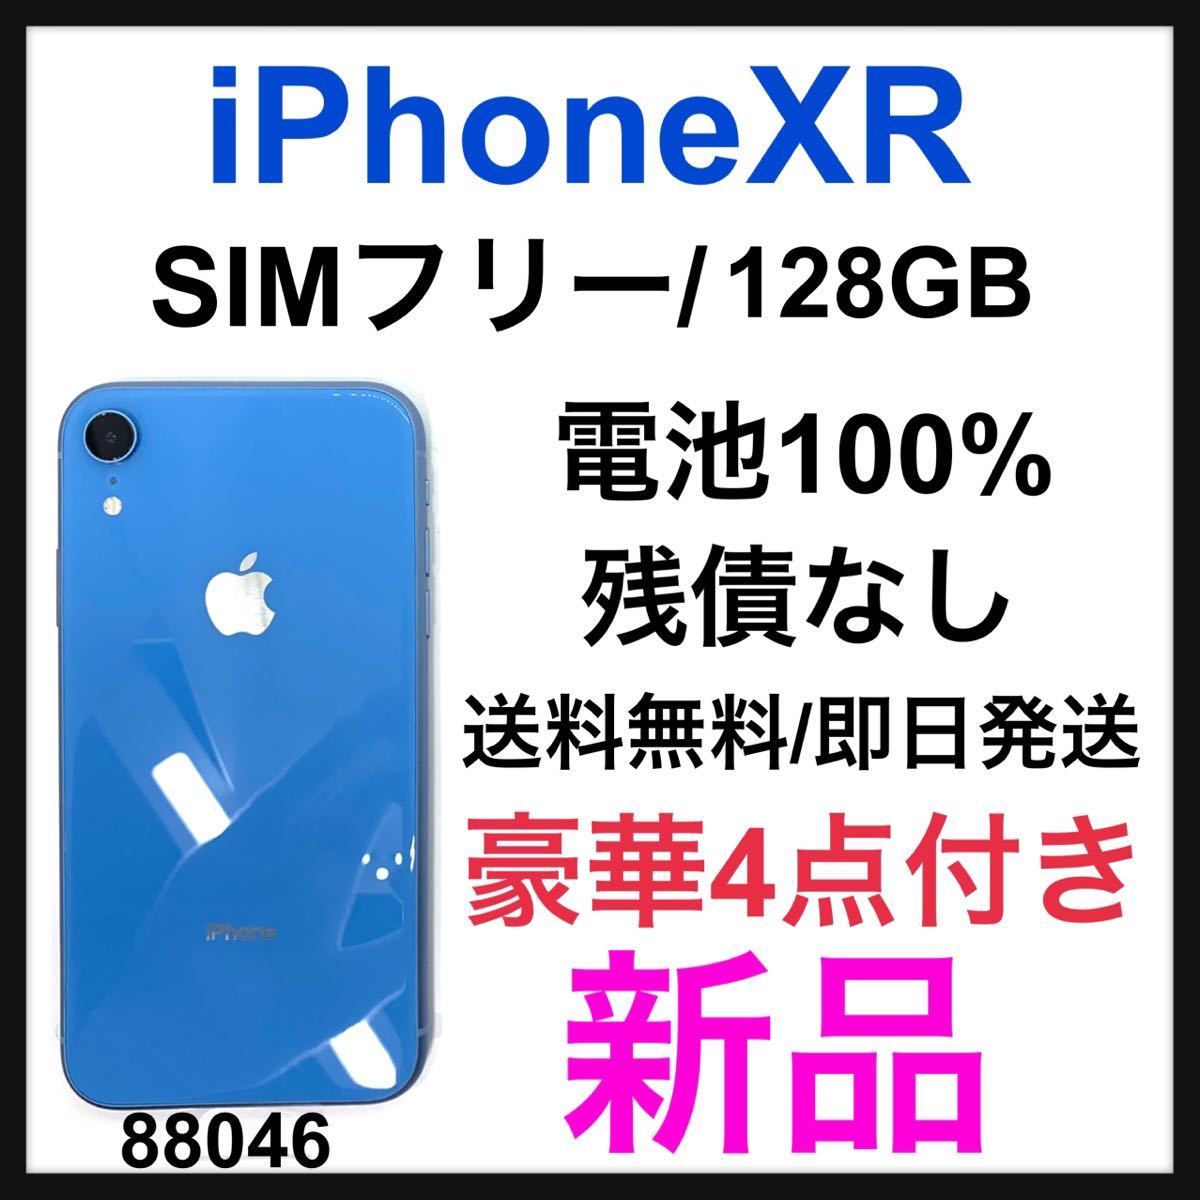 値引きする 新品 iPhone XR Blue 128 GB SIMフリー 本体 iPhone